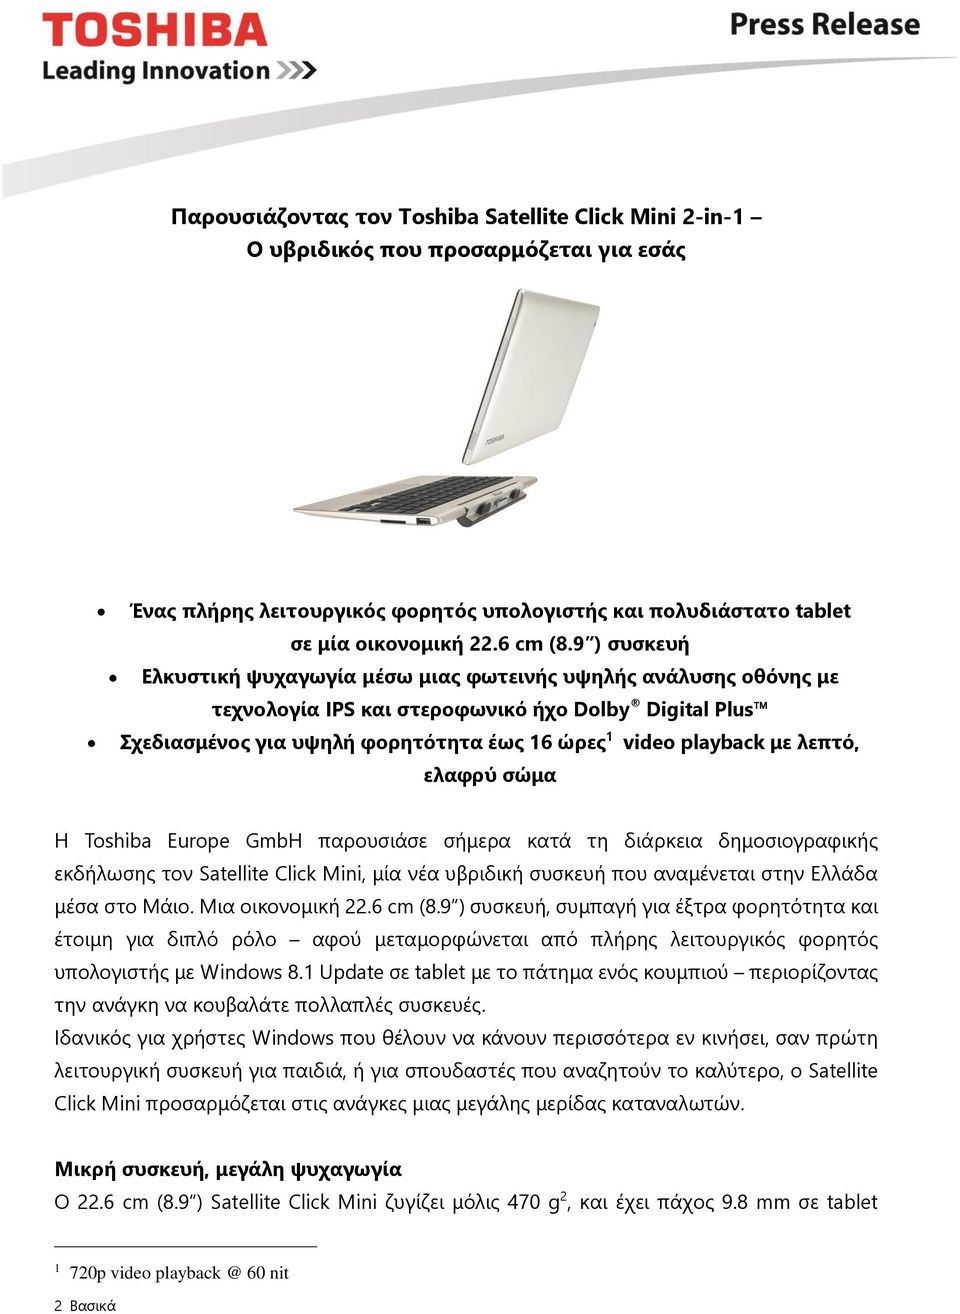 λεπτό, ελαφρύ σώμα Η Toshiba Europe GmbH παρουσιάσε σήμερα κατά τη διάρκεια δημοσιογραφικής εκδήλωσης τον Satellite Click Mini, μία νέα υβριδική συσκευή που αναμένεται στην Ελλάδα μέσα στο Μάιο.